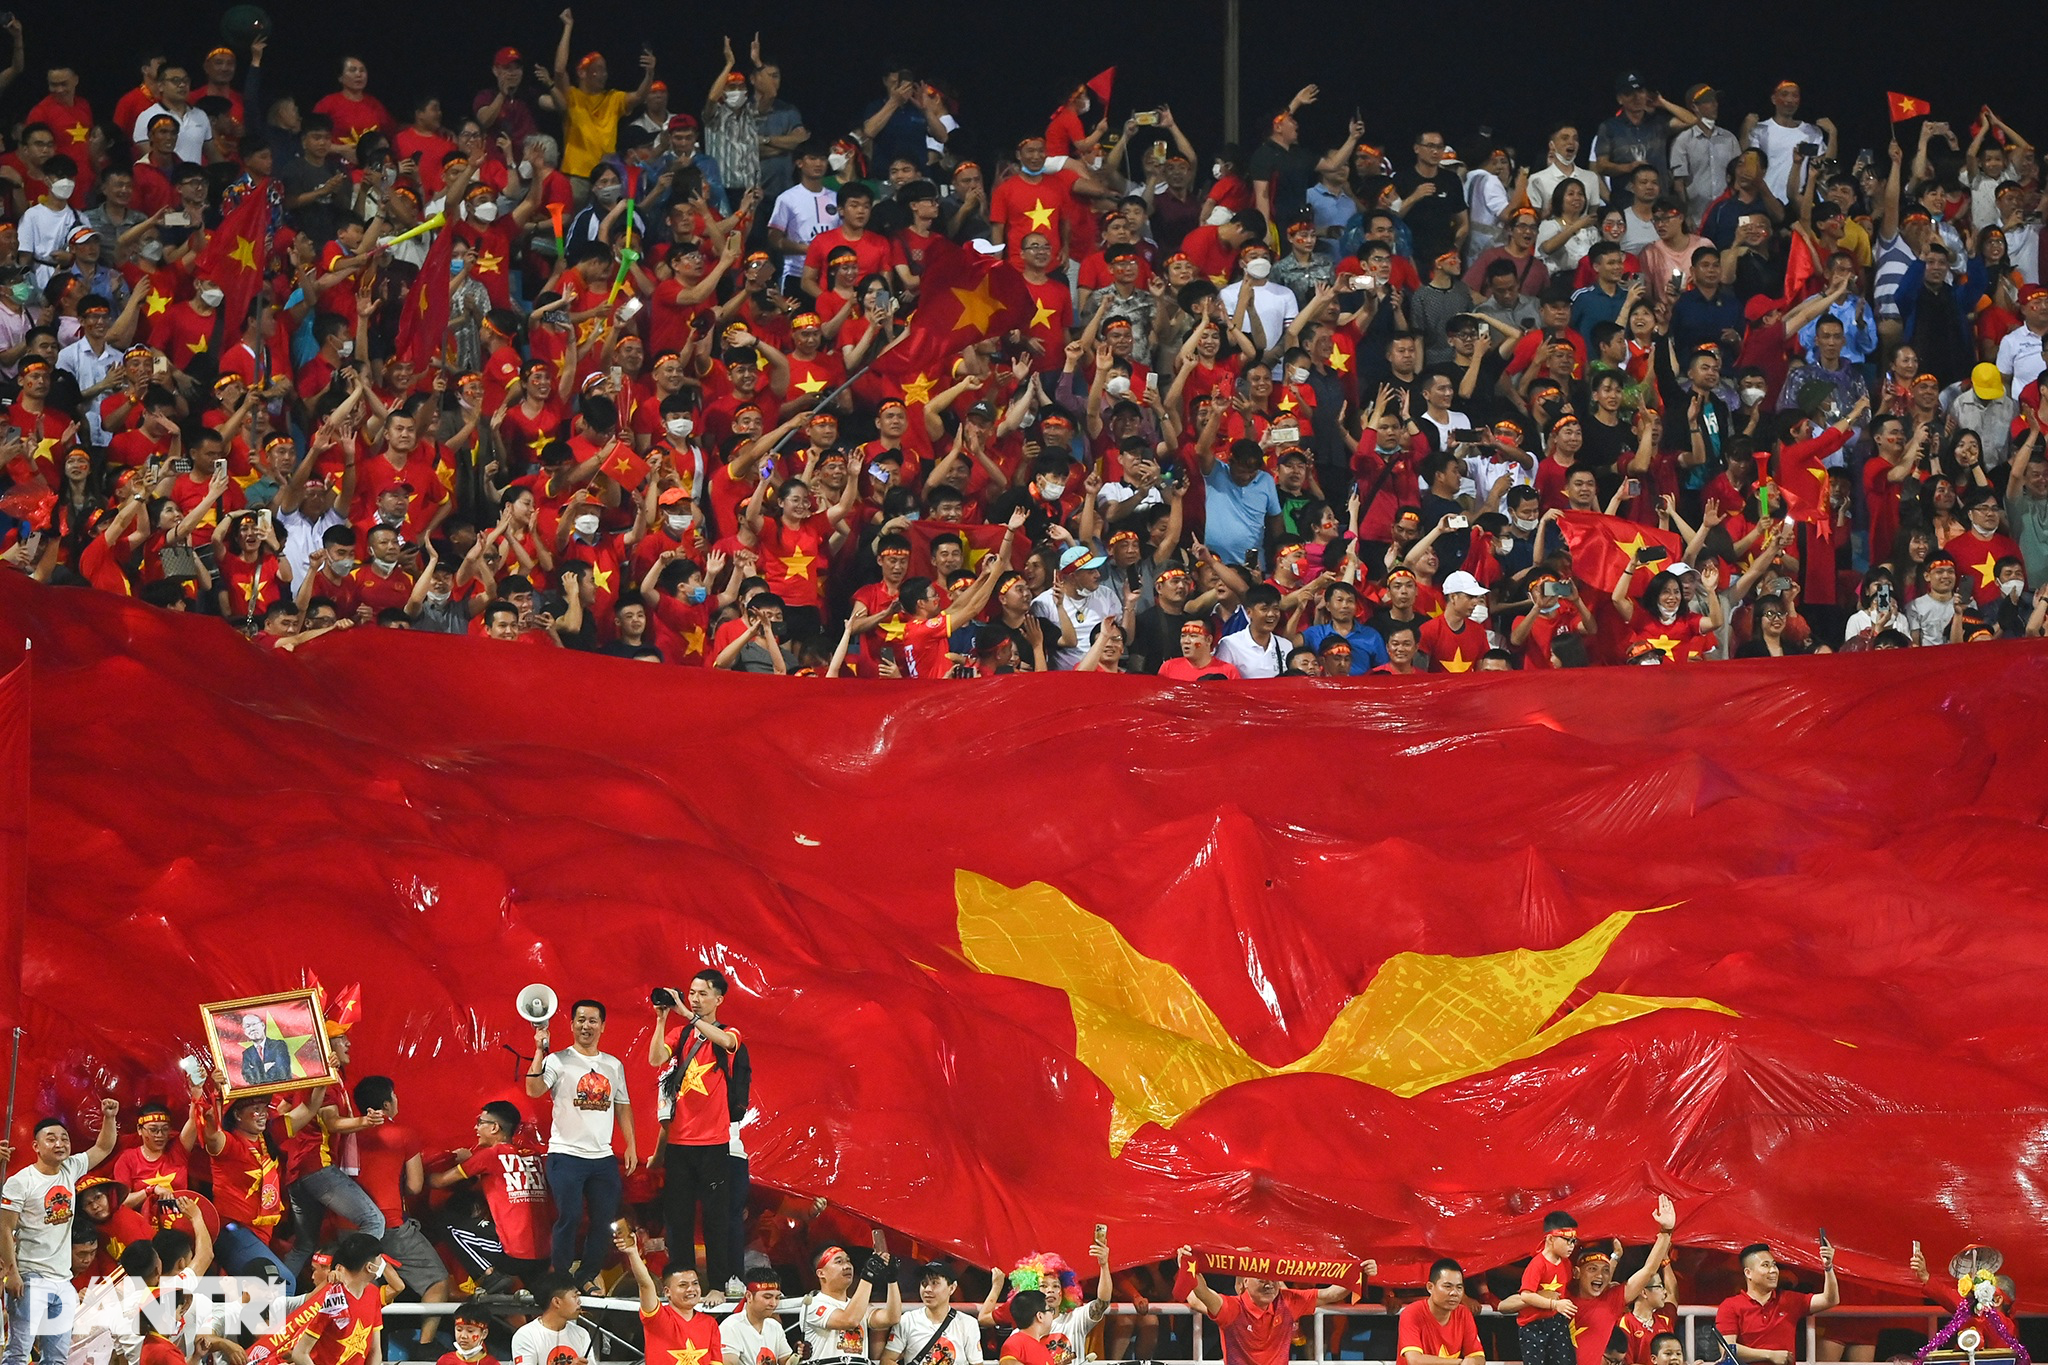 U23 Việt Nam: Các cầu thủ U23 Việt Nam đang cố gắng rất nhiều để đạt được thành tích cao trong các giải đấu quốc tế. Đội đã chứng tỏ sự nỗ lực và tinh thần đáng khâm phục và đã thu hút được sự chú ý của cả nước. Hãy xem những hình ảnh đáng nhớ của U23 Việt Nam trong các trận đấu hấp dẫn.